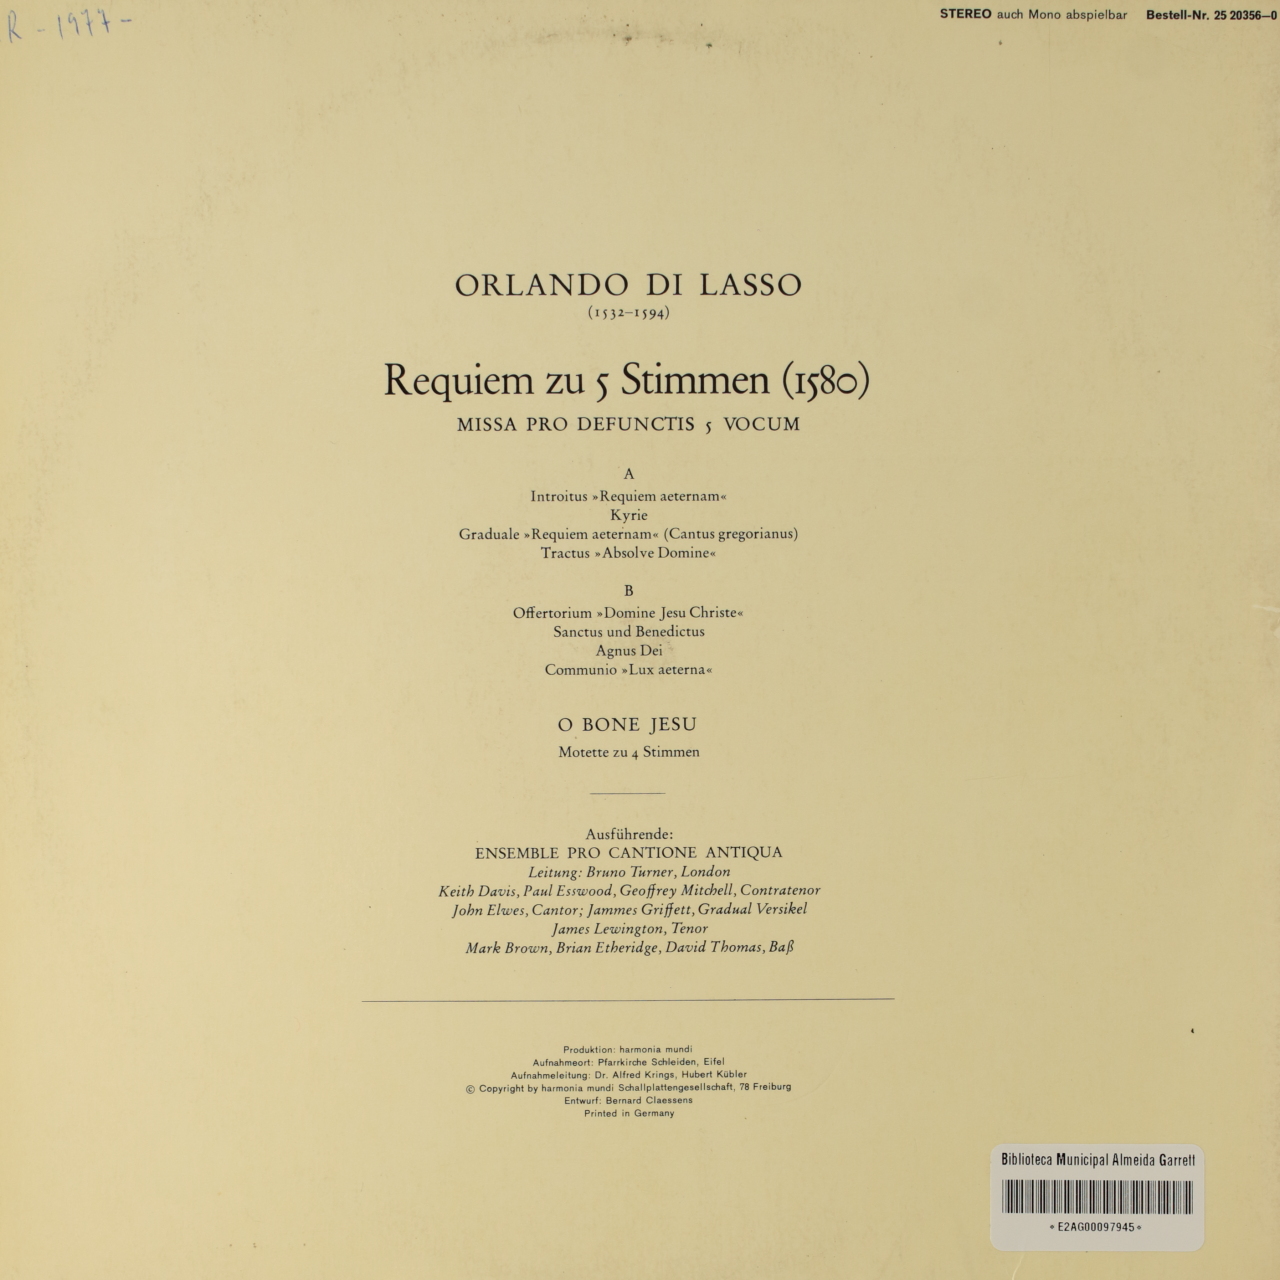 Lasso: Requiem zu 5 Stimmen - Missa pro de functis 5 vocum